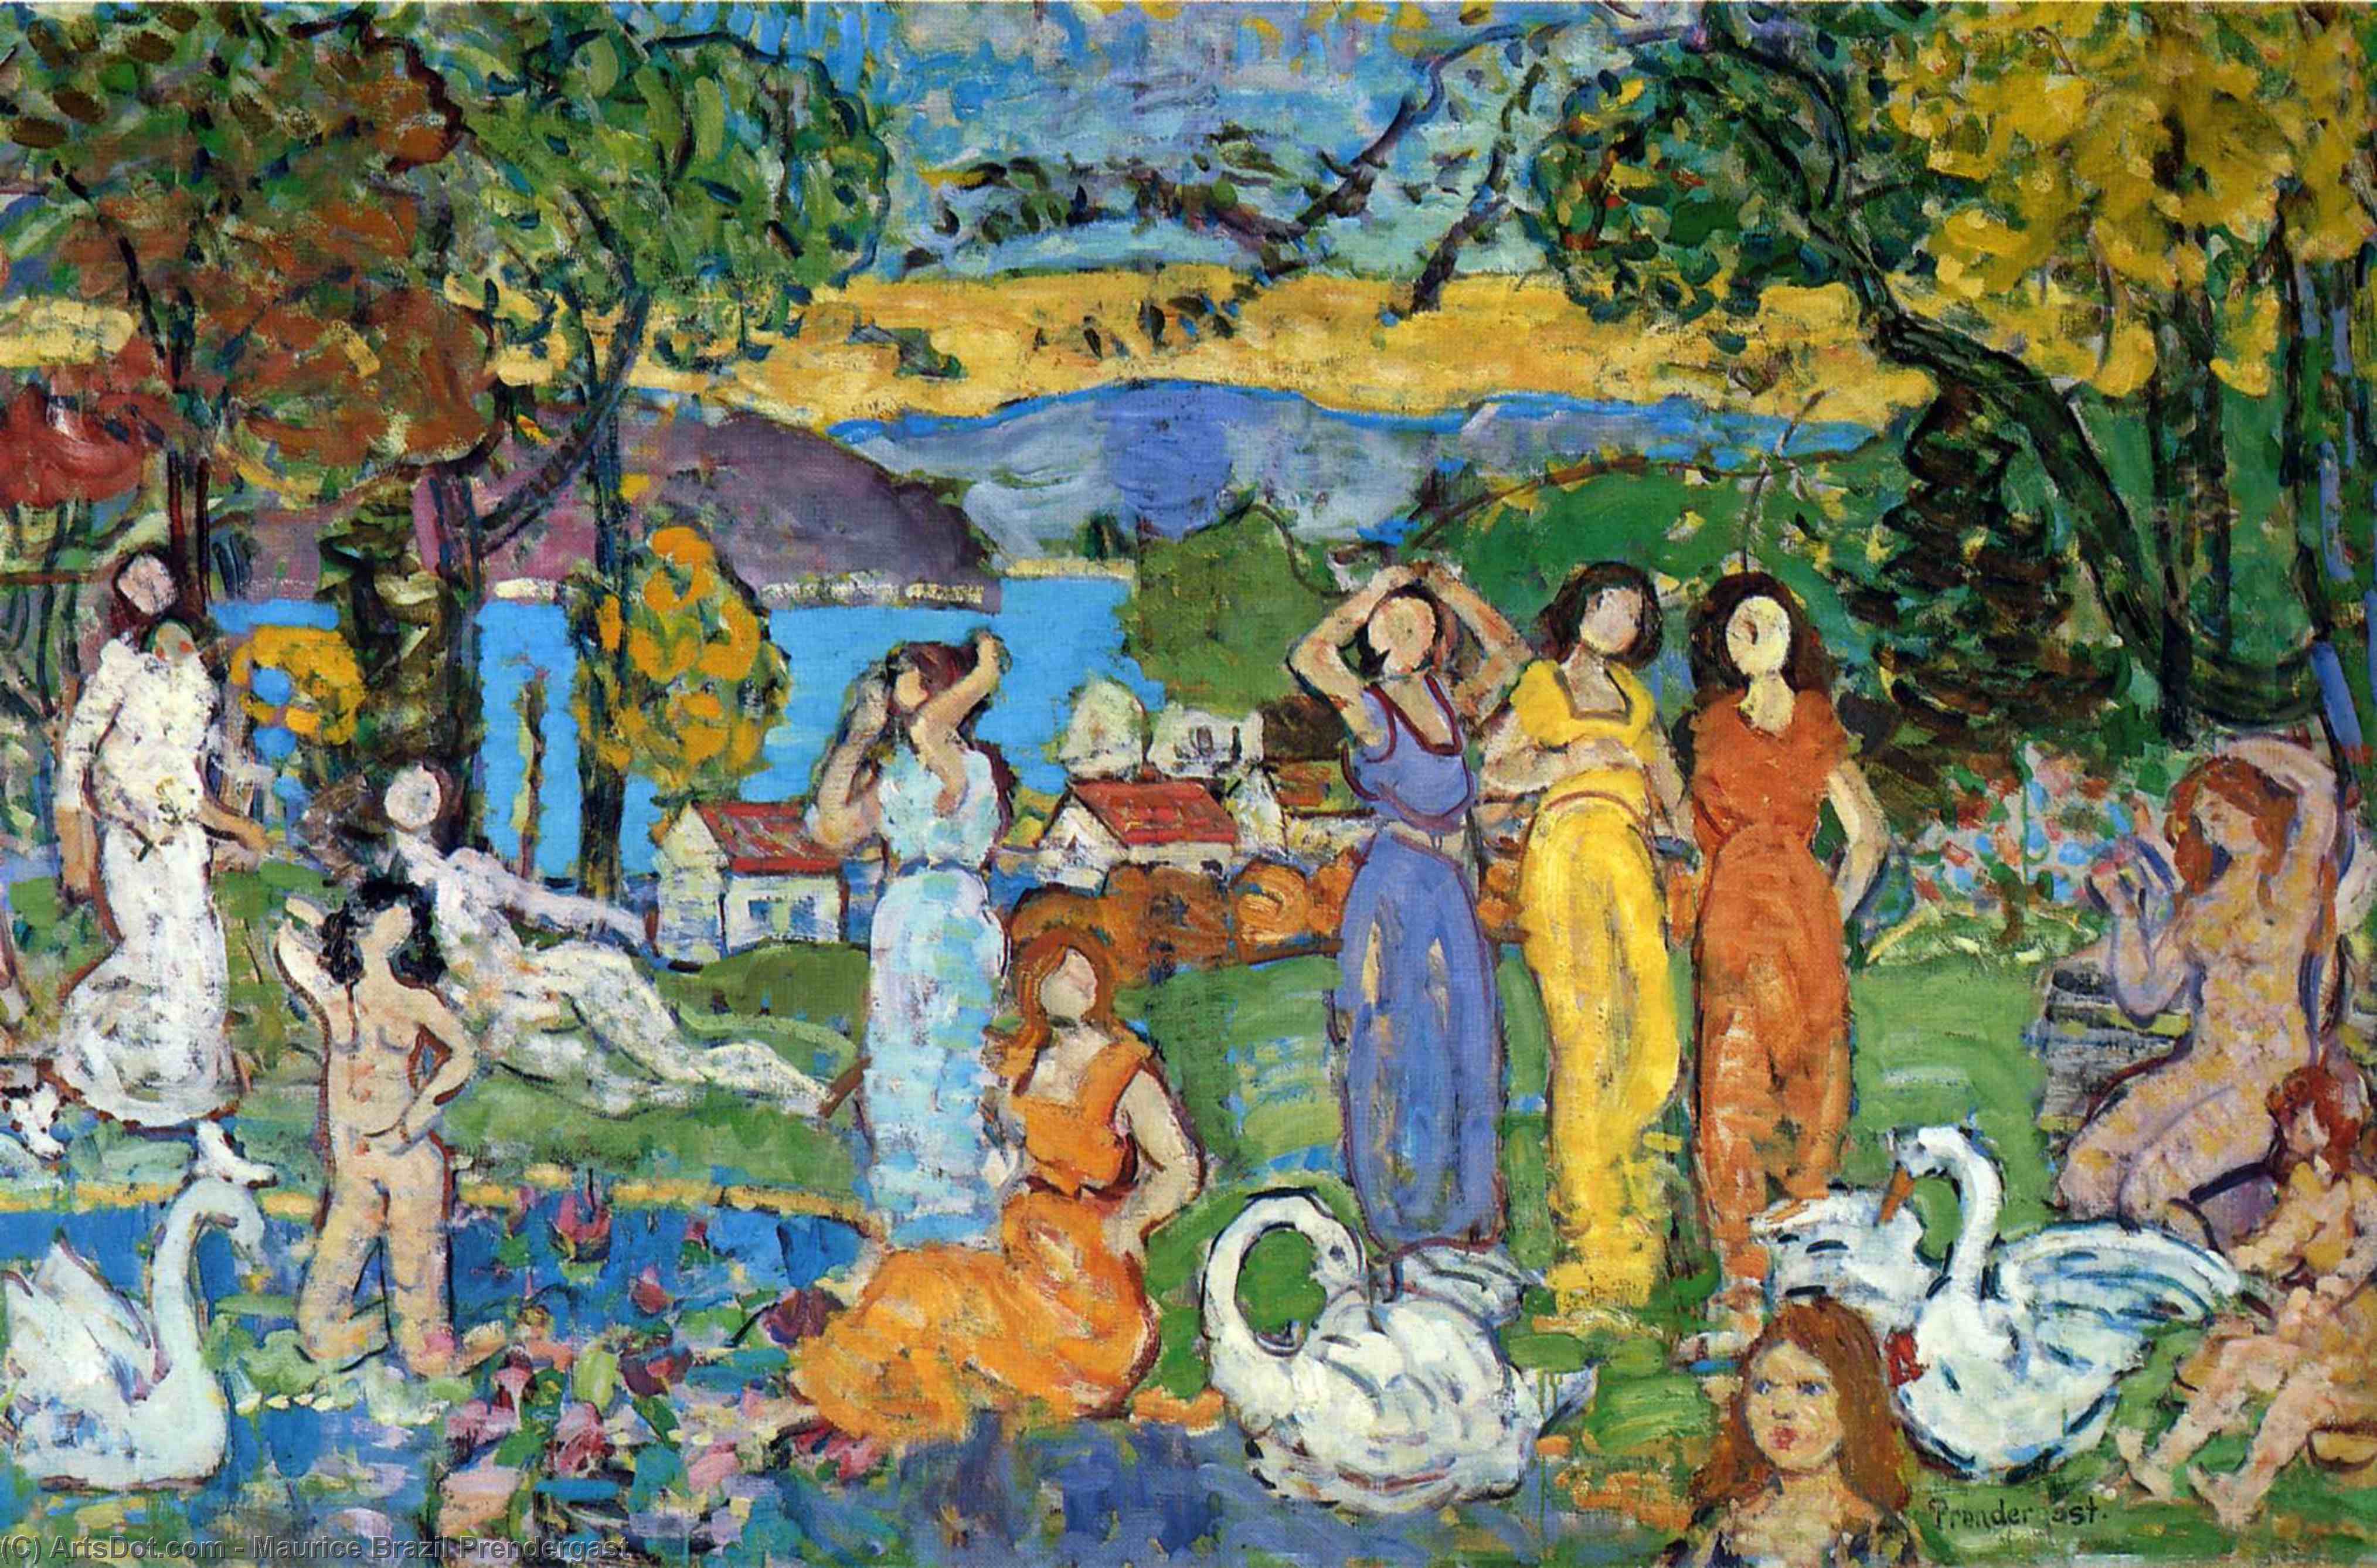 WikiOO.org - Enciklopedija likovnih umjetnosti - Slikarstvo, umjetnička djela Maurice Brazil Prendergast - The Picnic